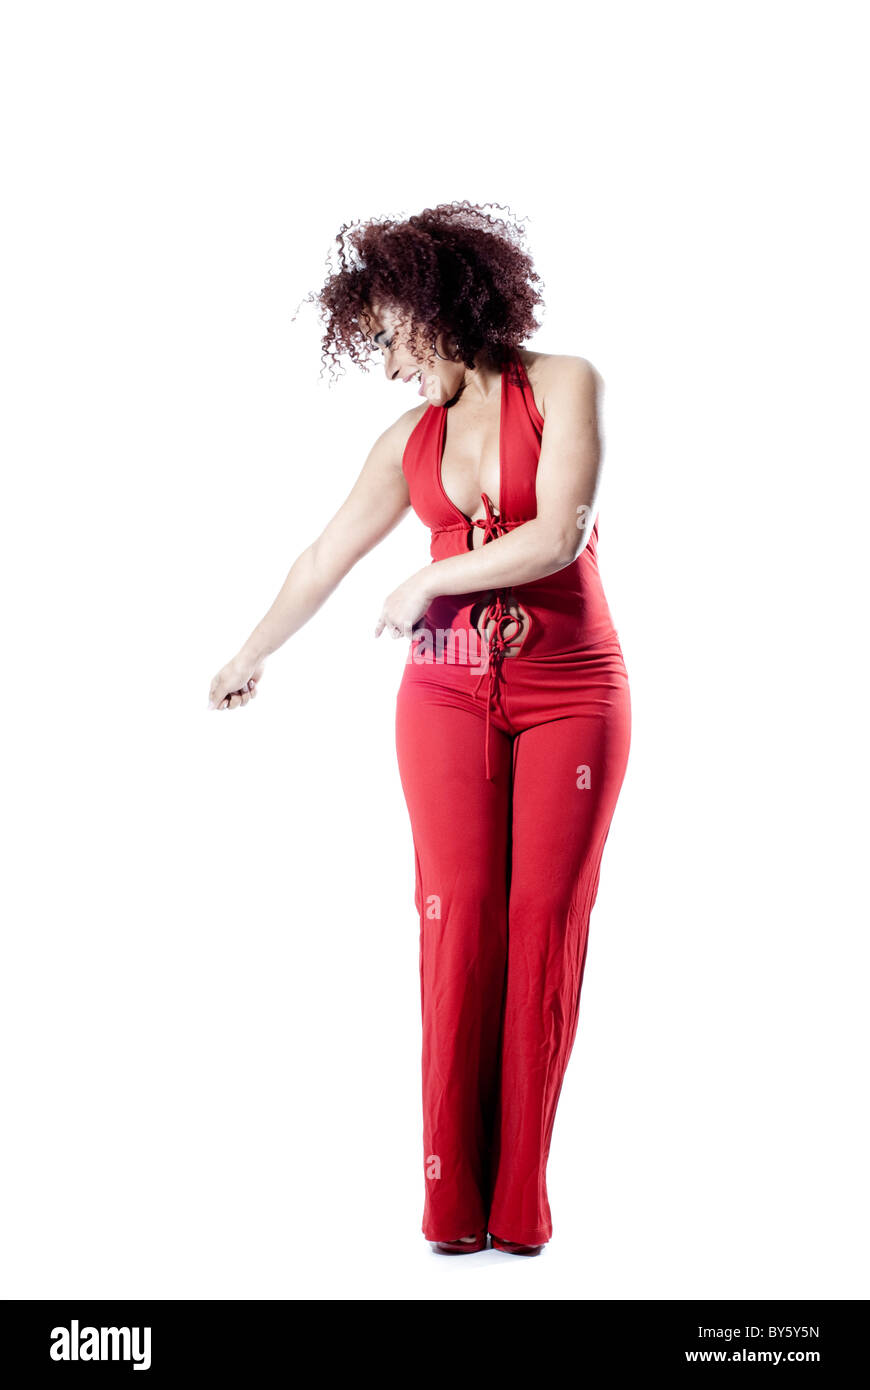 Brasilianische Frauen tanzen und spielen im Studio. Die Frau trägt ein rotes Kleid und lockiges Haar Stockfoto